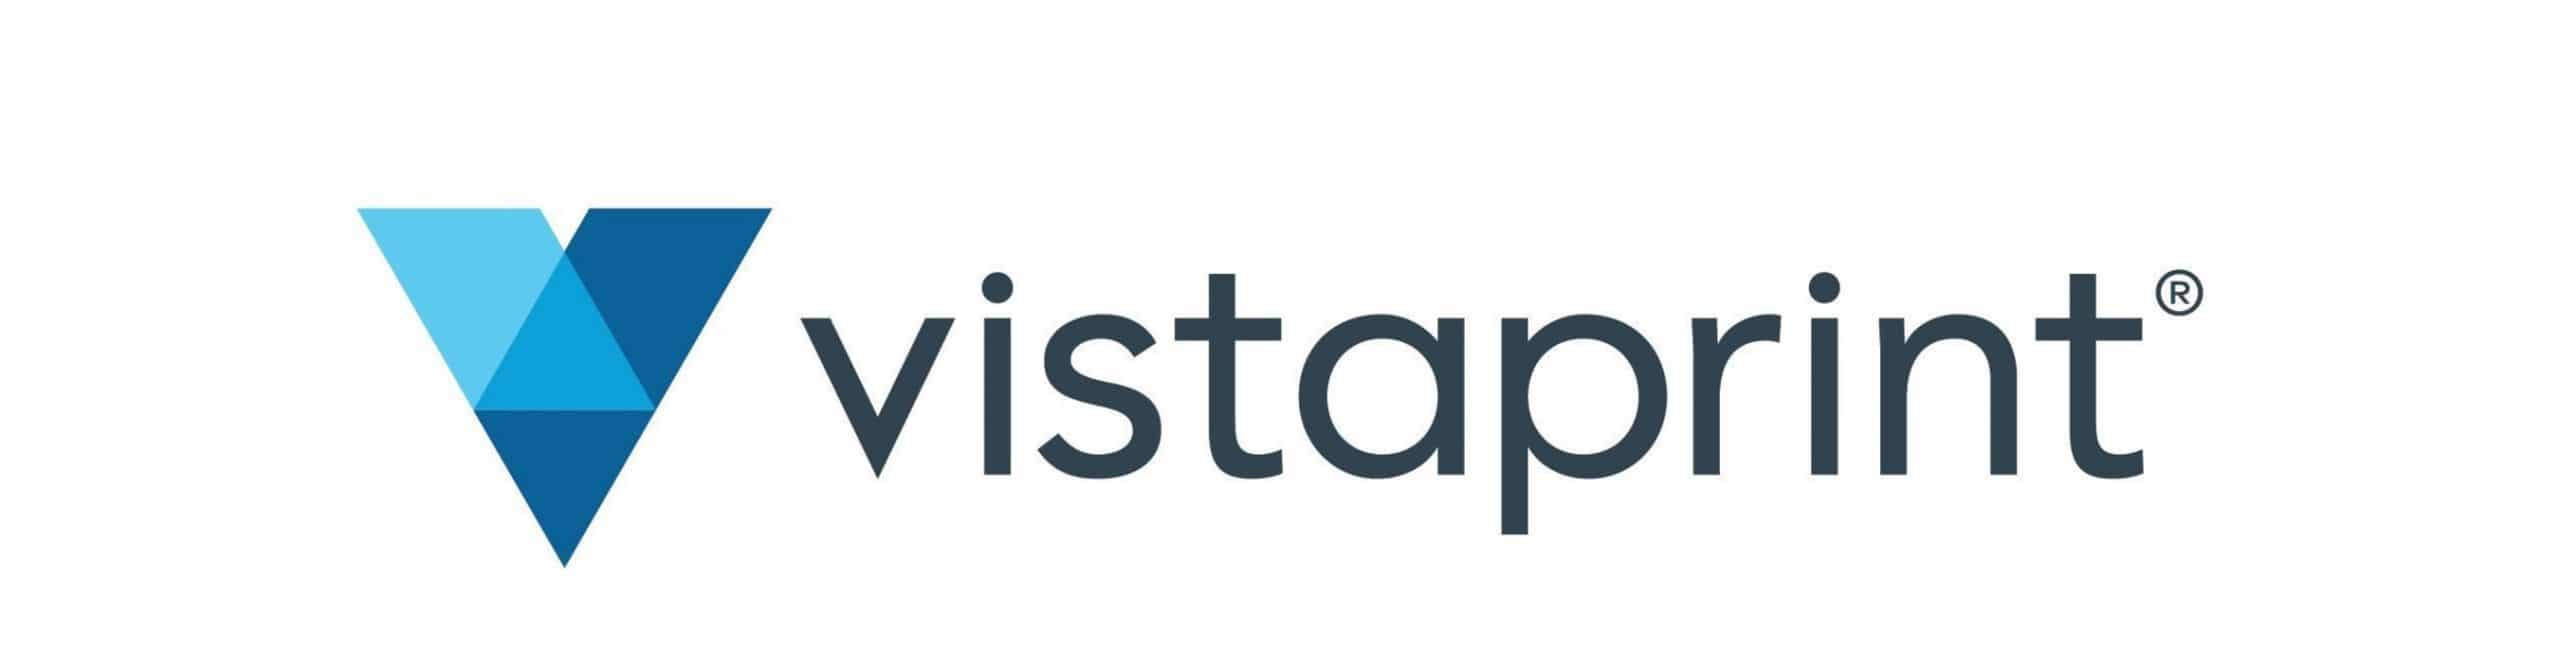 Logotipo de Vistaprint